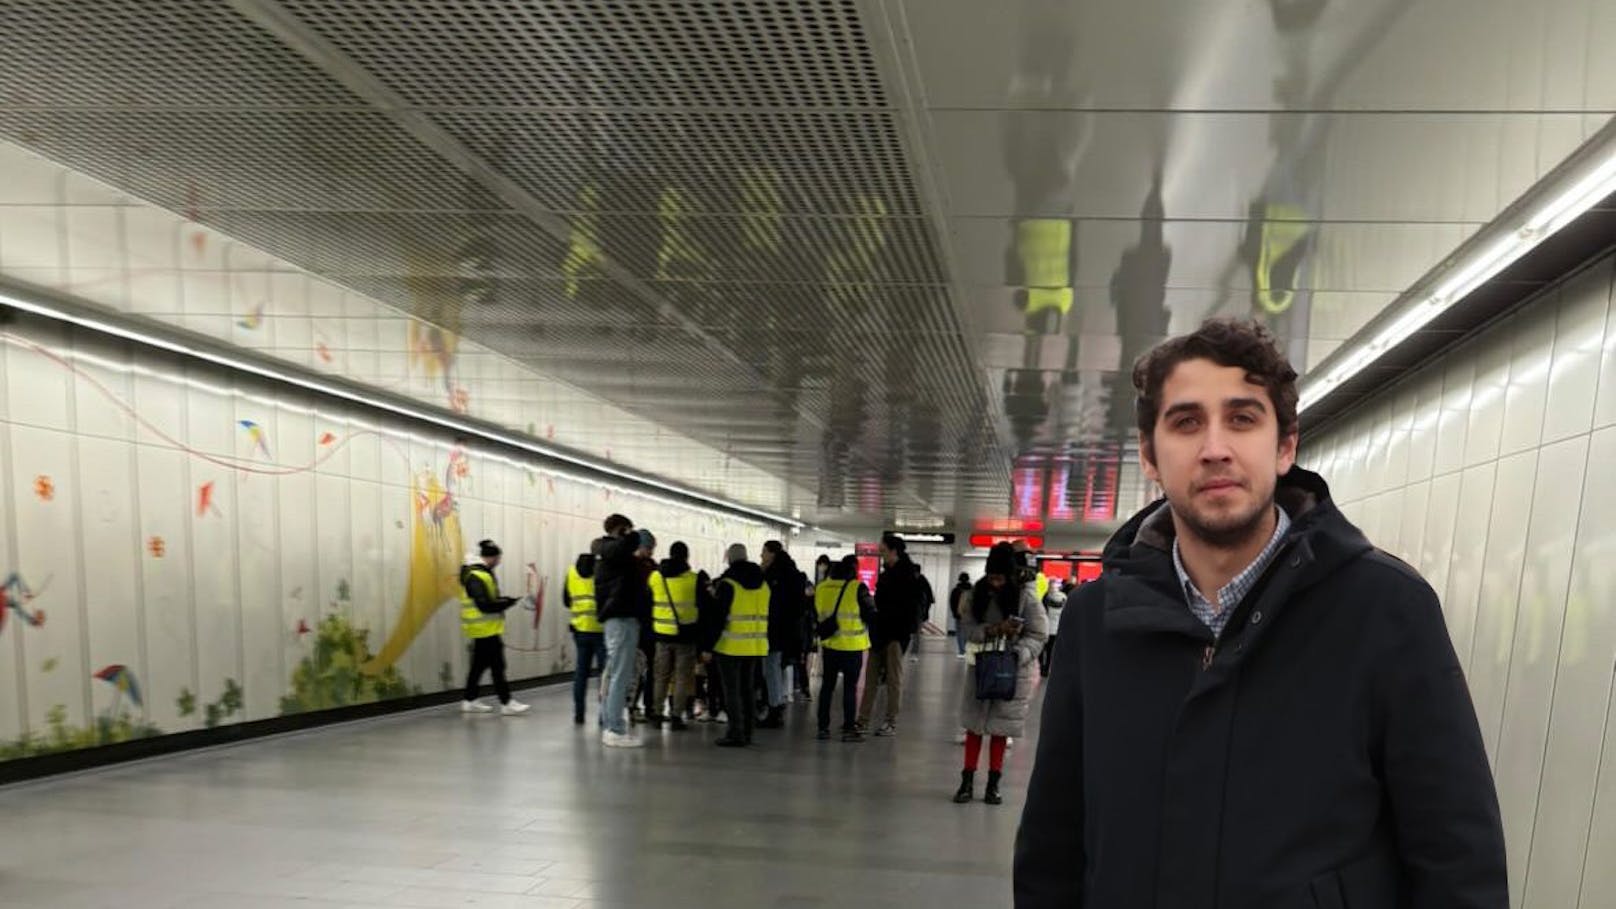 Wiener ging durch U-Bahnstation, sollte 105 Euro zahlen